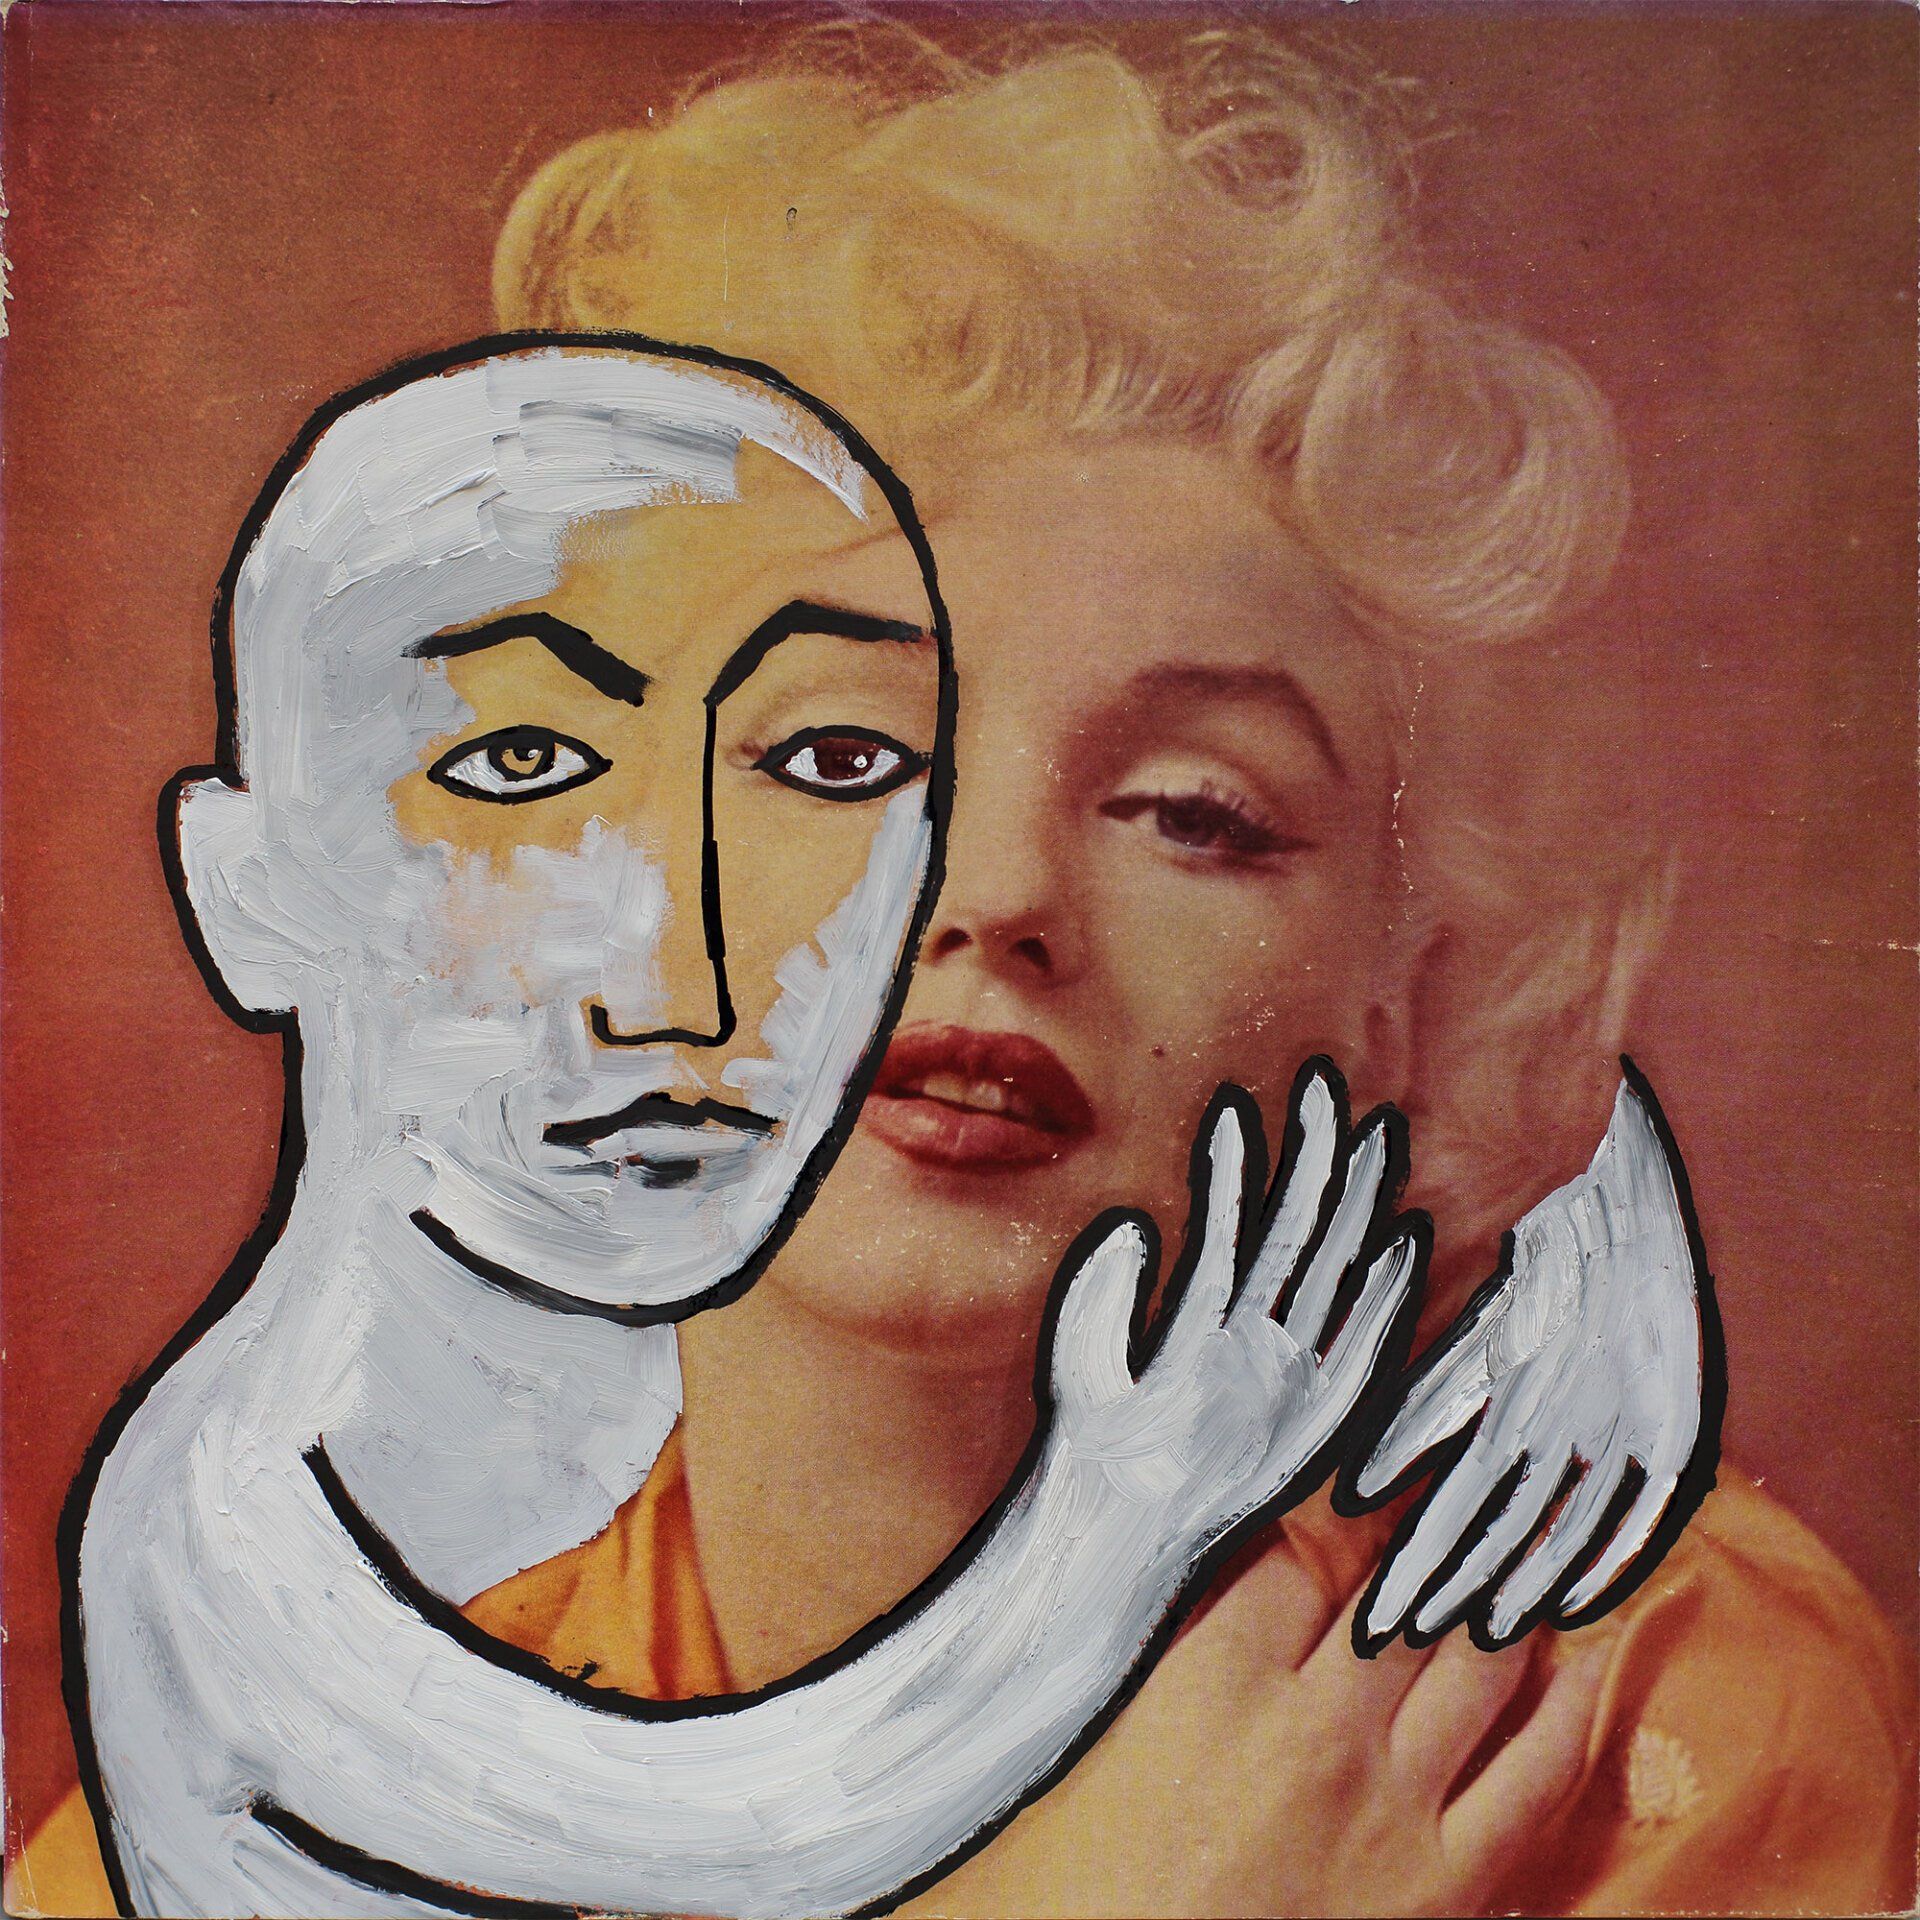 „Ghost Rider No. 9“ (Marilyn Monroe) by Sebastian Bieniek (B1EN1EK), 2019. Oil on original LP cover, 31,5 cm. x 30 cm. Bieniek-Paint (overpainted medium) from the oeuvre of Bieniek-Face (BieniekFace) by the artist.